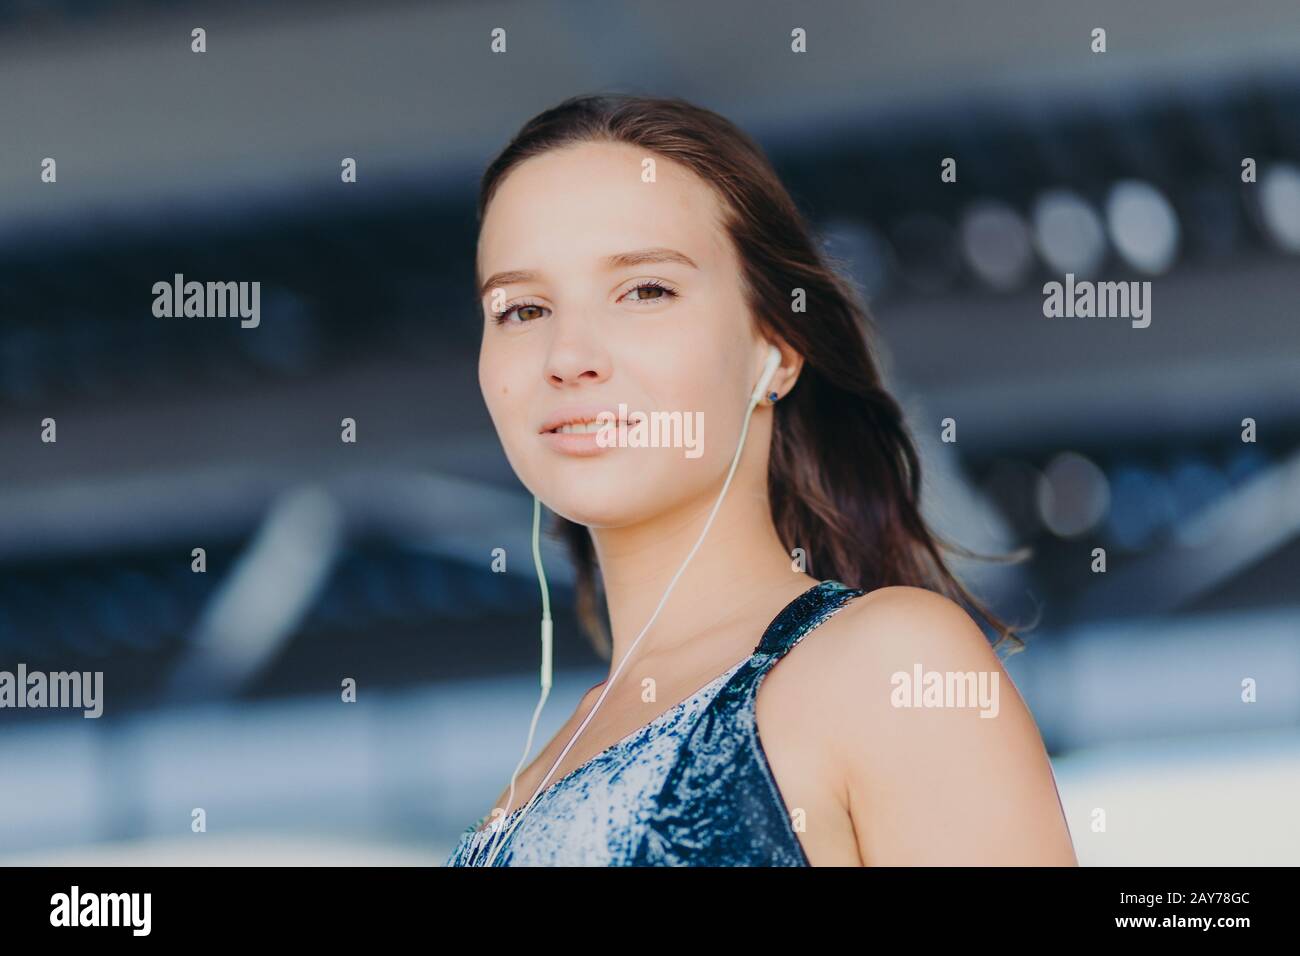 Nahaufnahme einer gut aussehenden gesunden europäischen Frau hört Musik mit unerkennbarem Gerät, blickt direkt auf die Kamera, posiert gegen verschwommenes Backgroschen Stockfoto